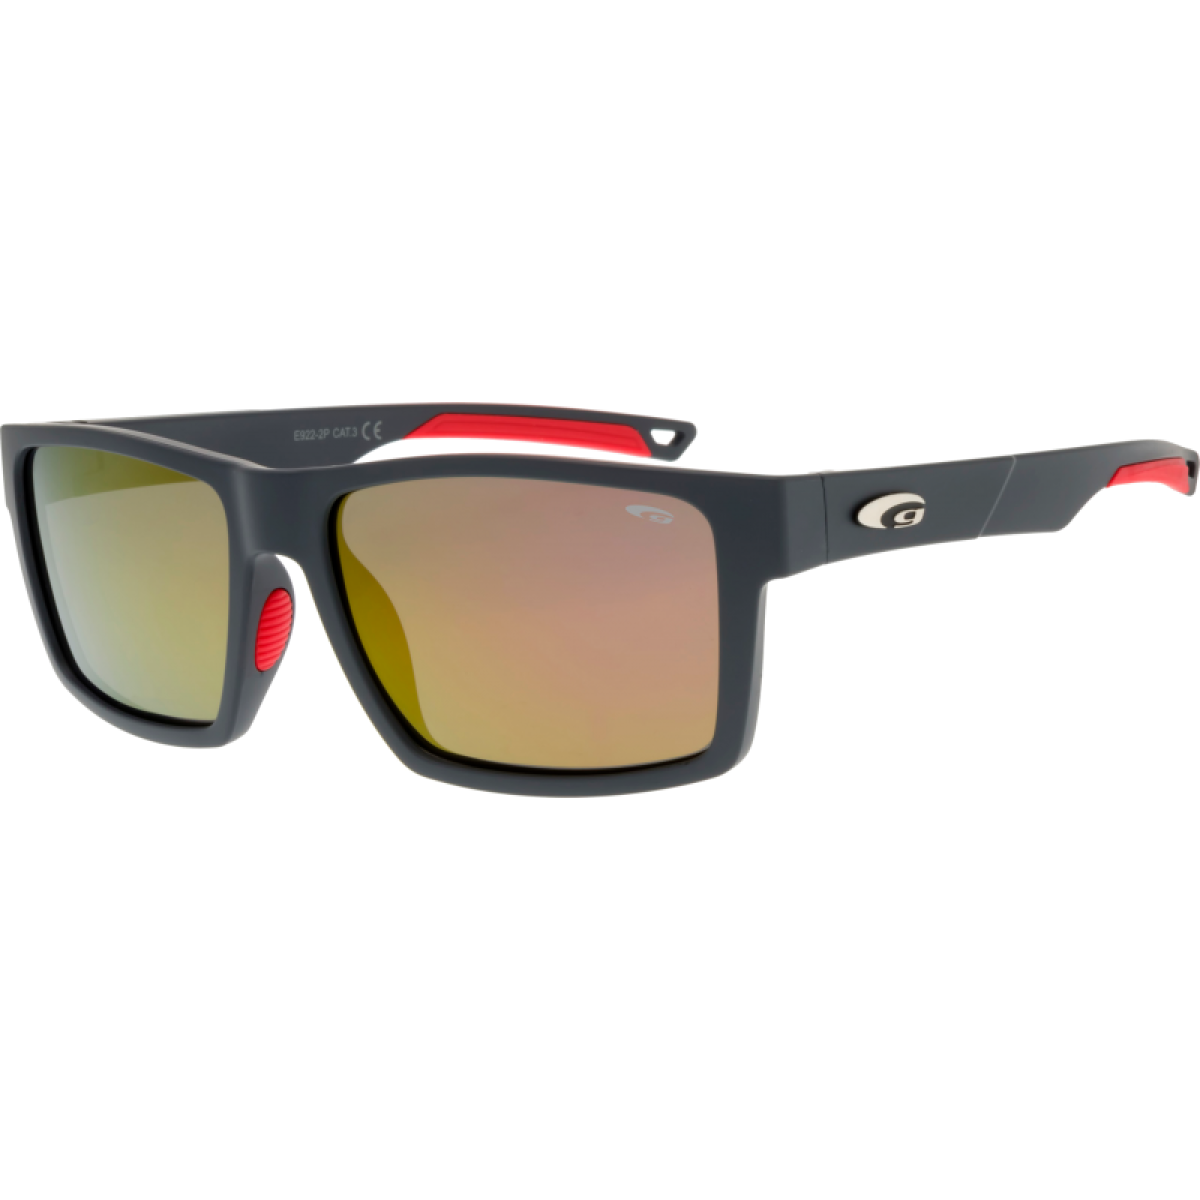 Polarized Sunglasses E922-2P GOGGLE - view 1